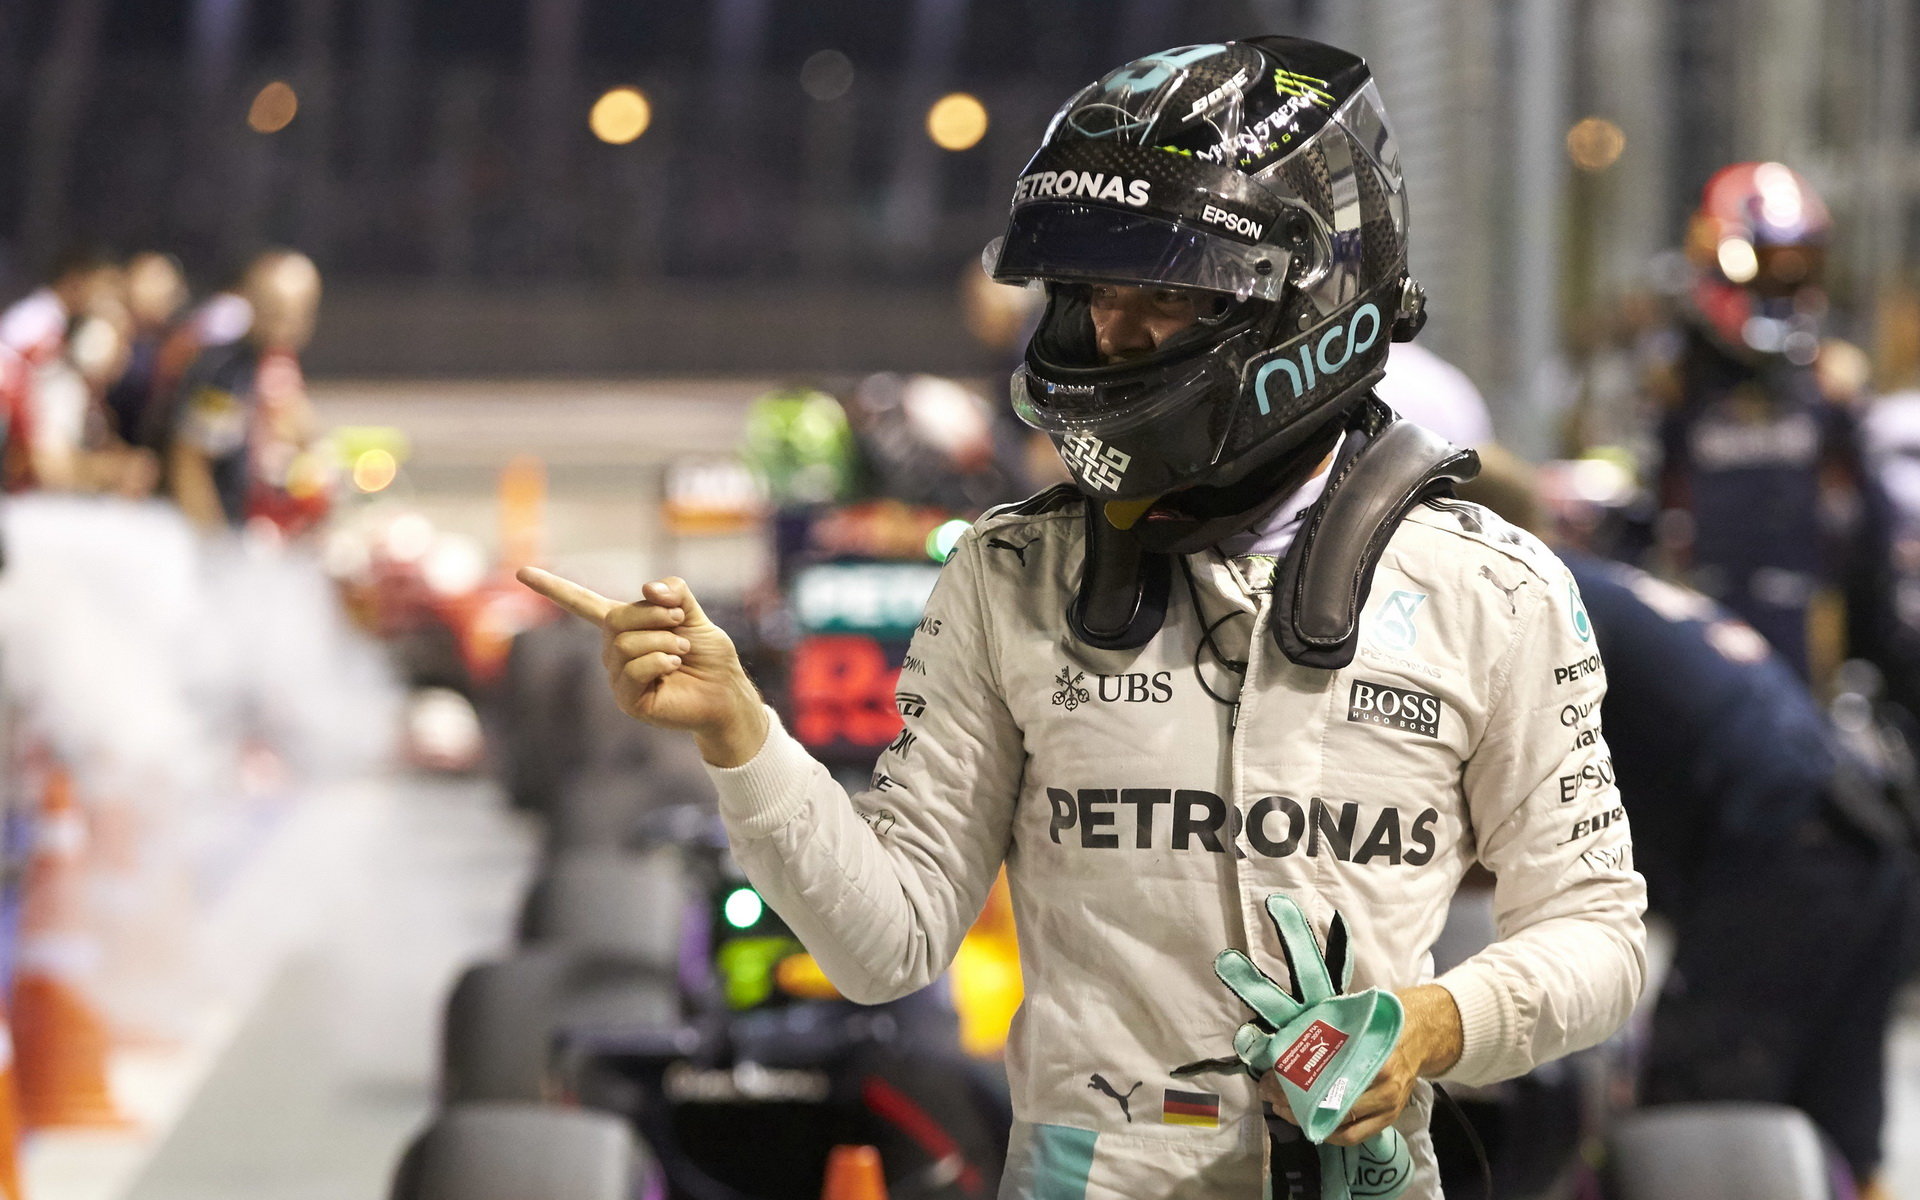 Nico Rosberg po kvalifikaci v Singapuru